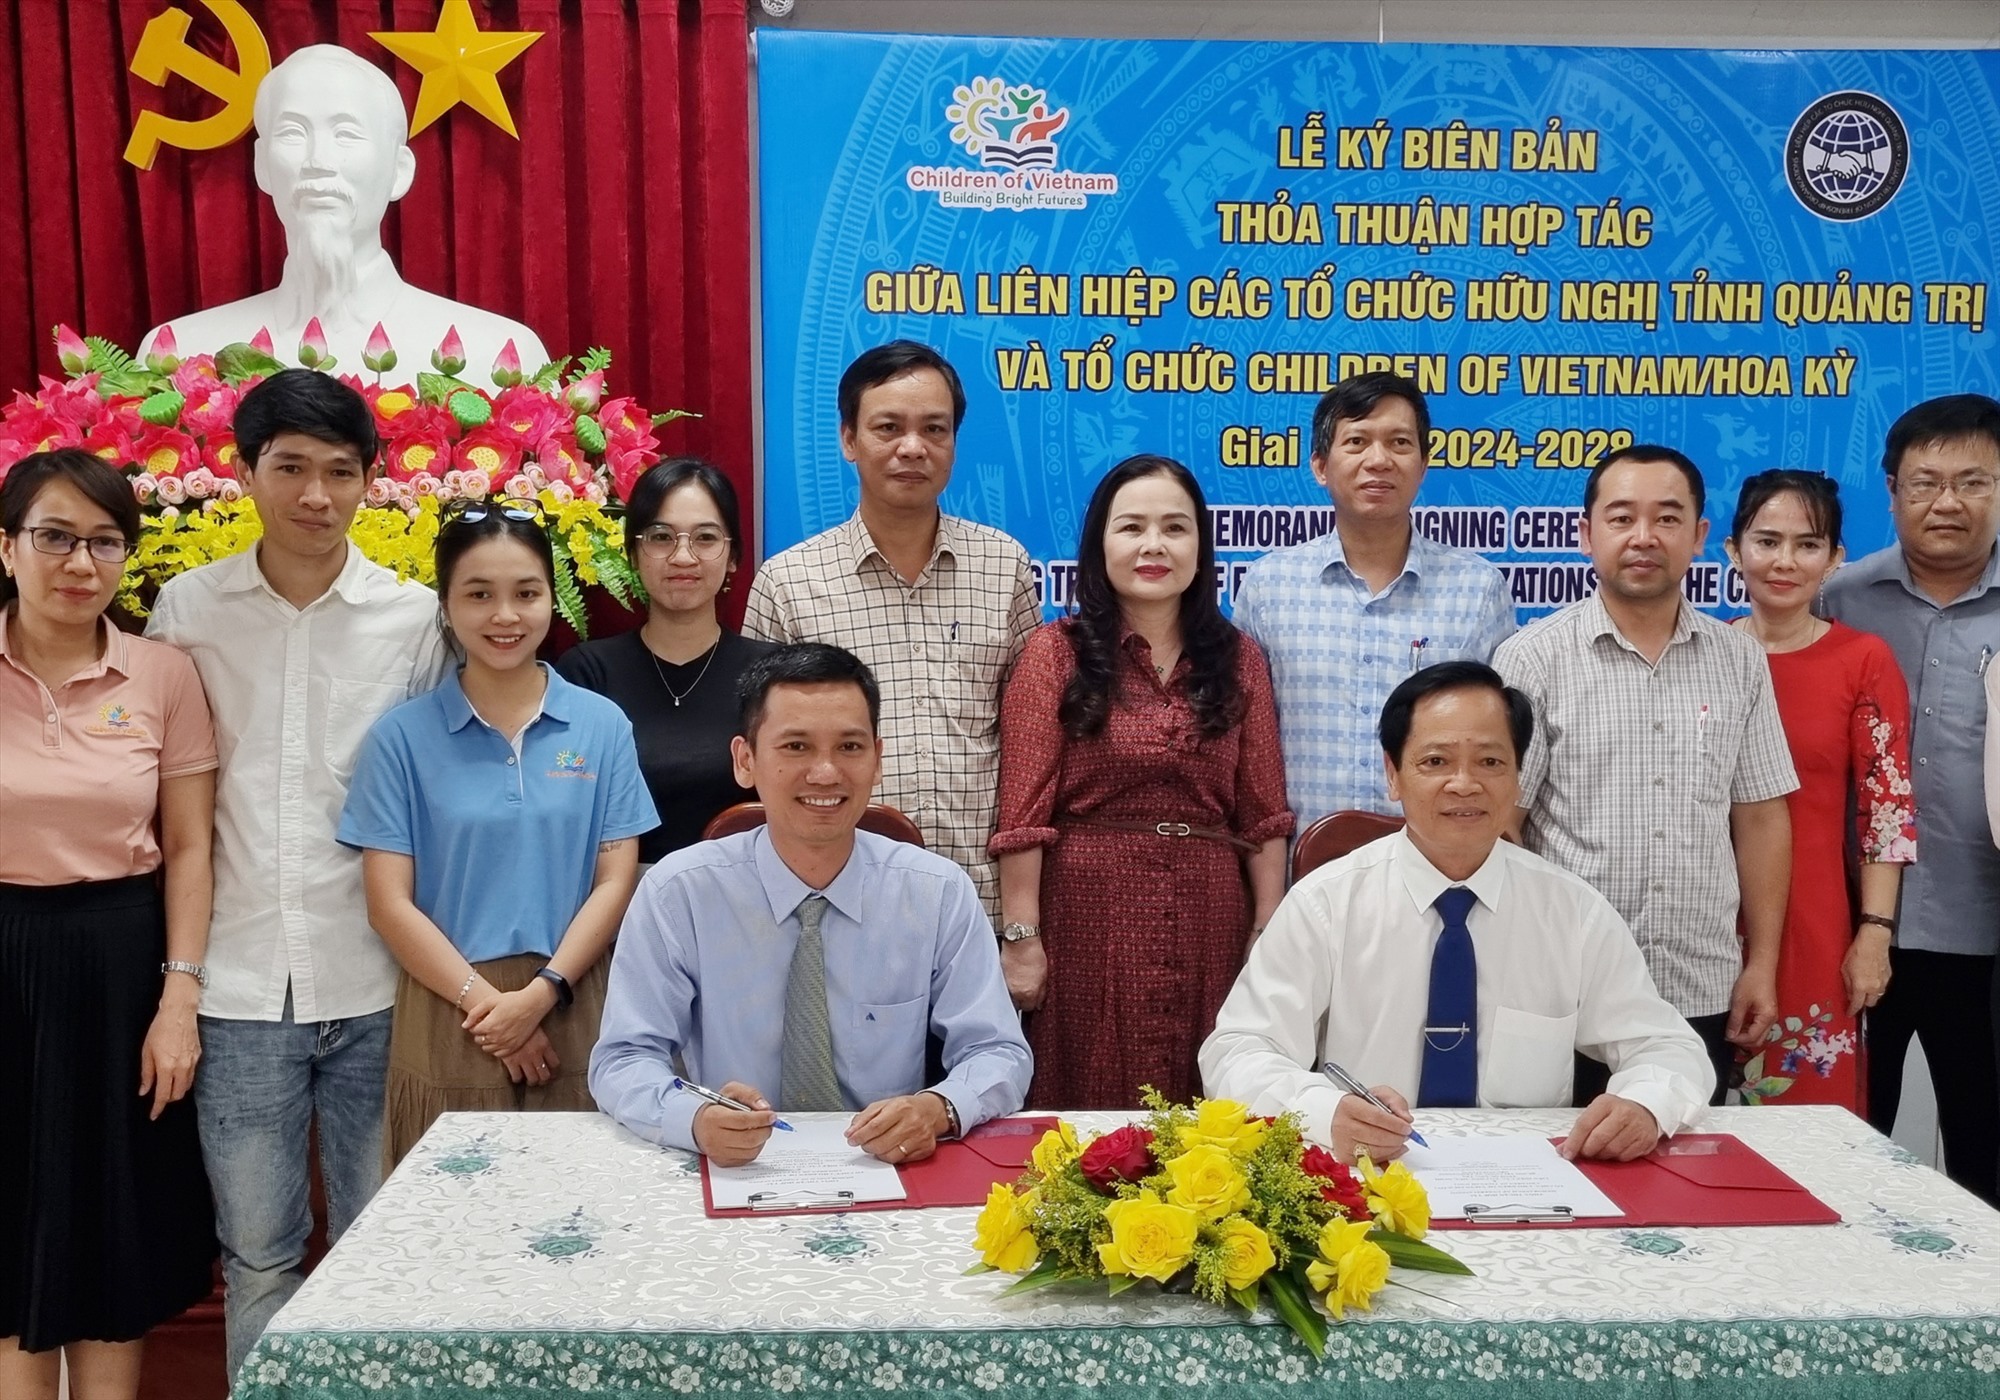 Chủ tịch Liên hiệp các Tổ chức Hữu nghị tỉnh Trần Khánh Phôi và Giám đốc quốc gia Children of Vietnam Võ Đinh Anh Tuấn ký kết biên bản ghi nhớ - Ảnh: Tú Linh